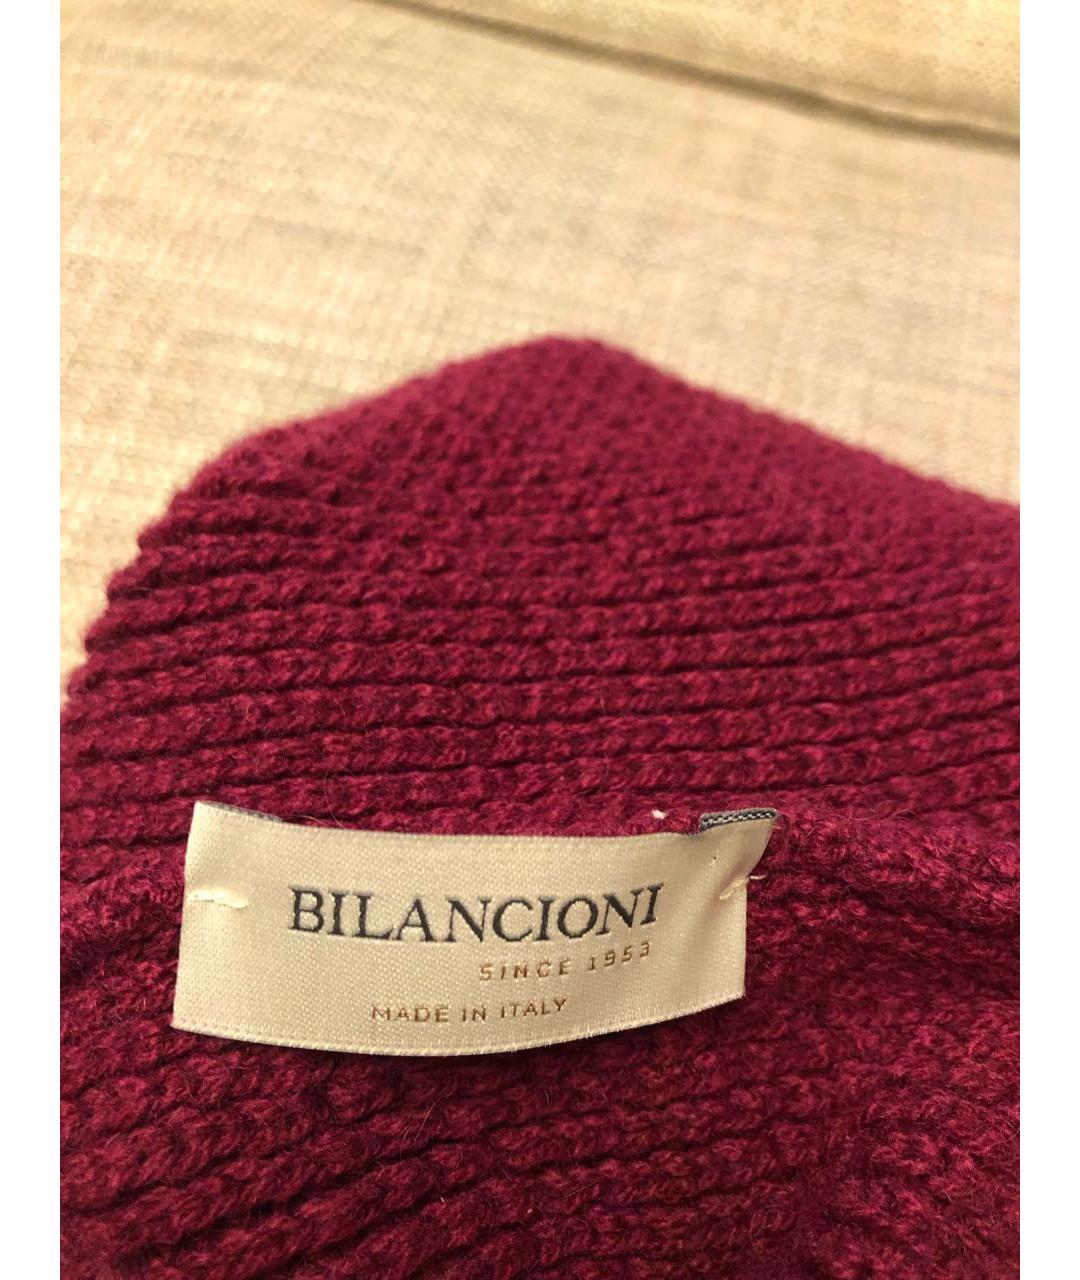 BILANCIONI Бордовая шерстяная шапка, фото 2